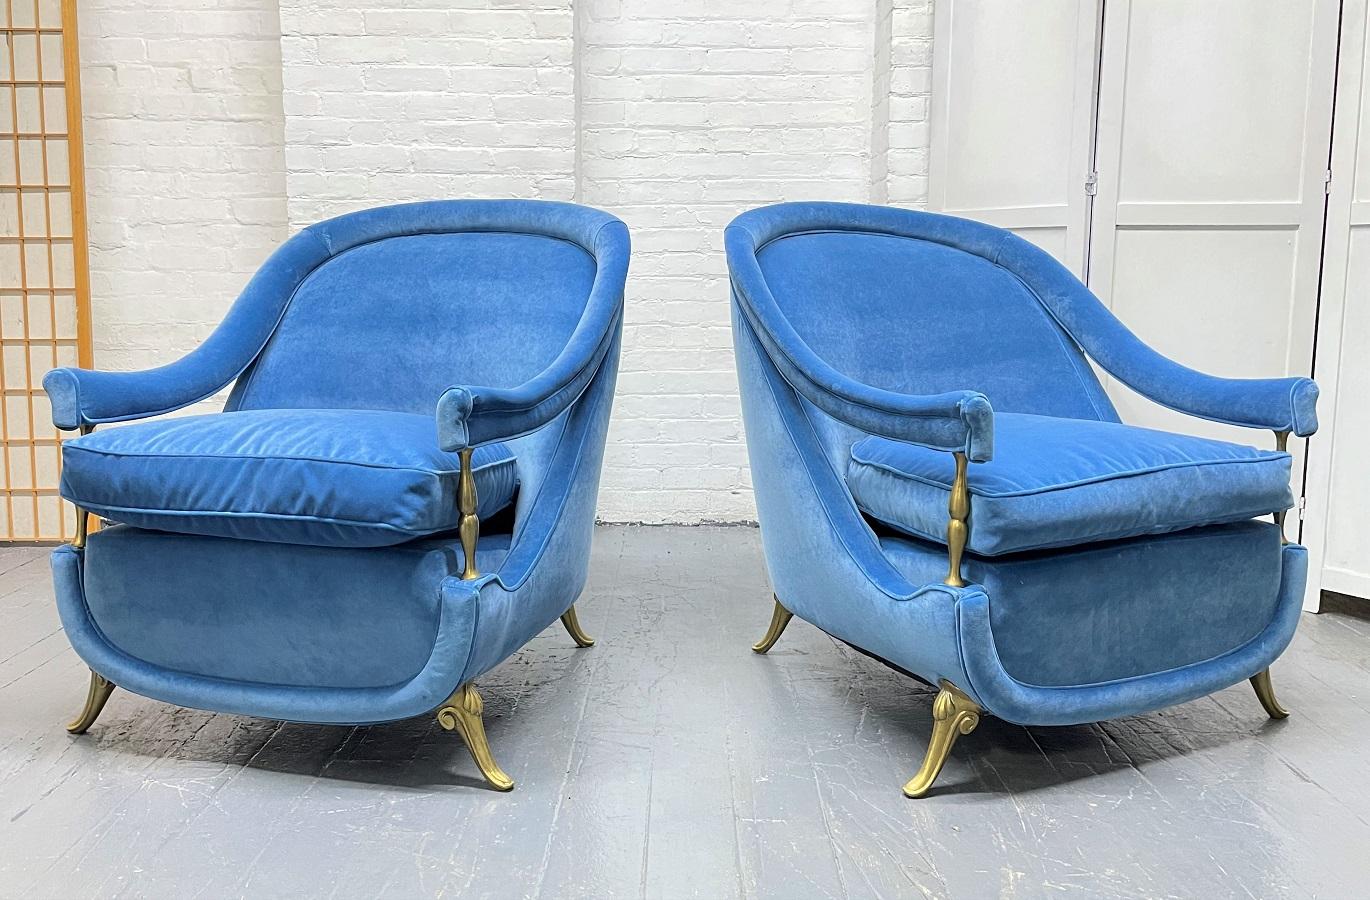 Ein Paar französische Sessel aus Messing und Samt aus den 1950er Jahren. Die Stühle sind mit blauem Samt gepolstert, haben gewölbte Rückenlehnen, schräge Armlehnen, lose gepolsterte Sitze und Messingfüße.